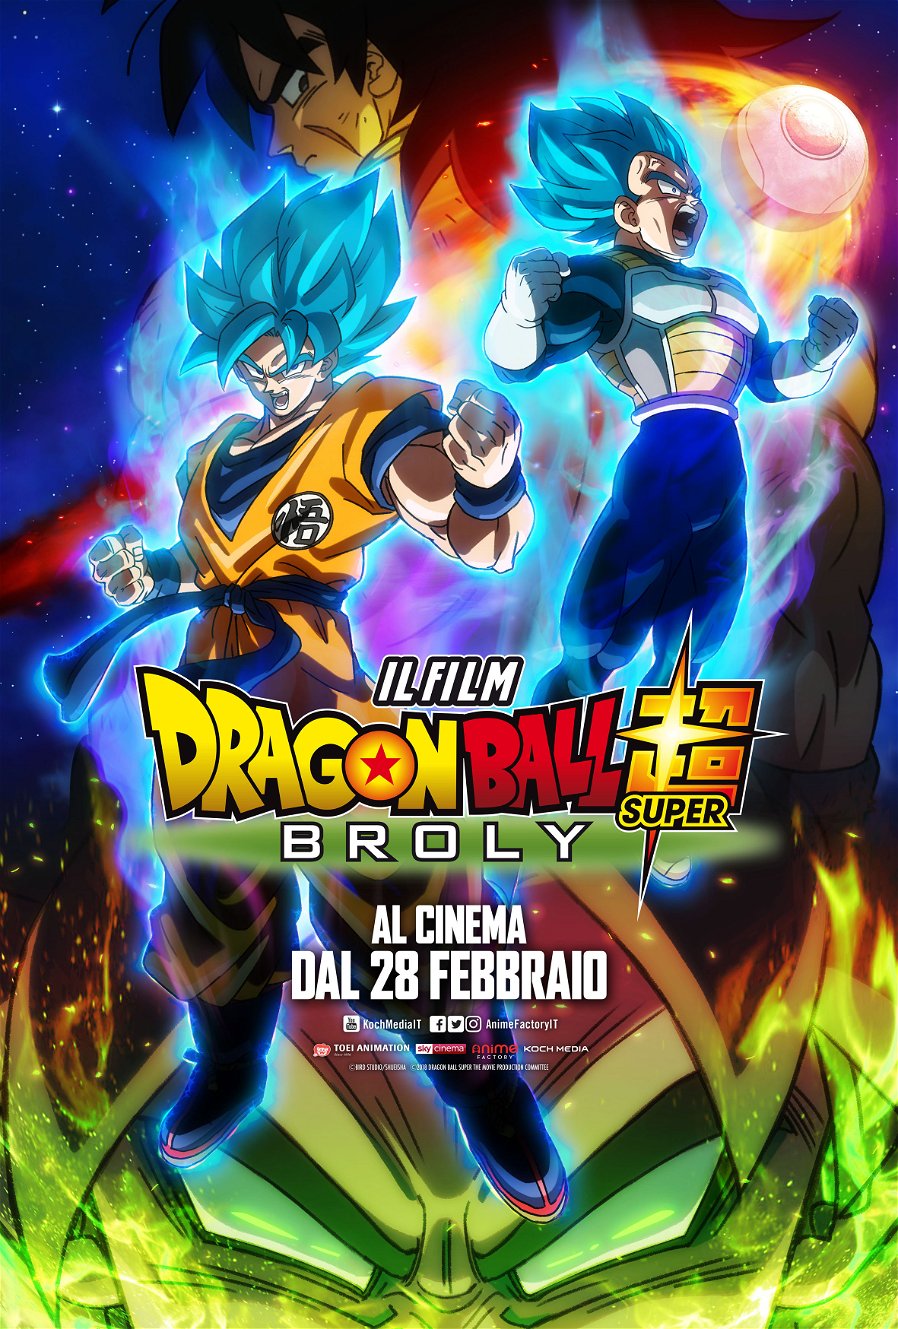 Immagine di Dragon Ball Super: Broly - Il Film, trailer e poster ufficiali